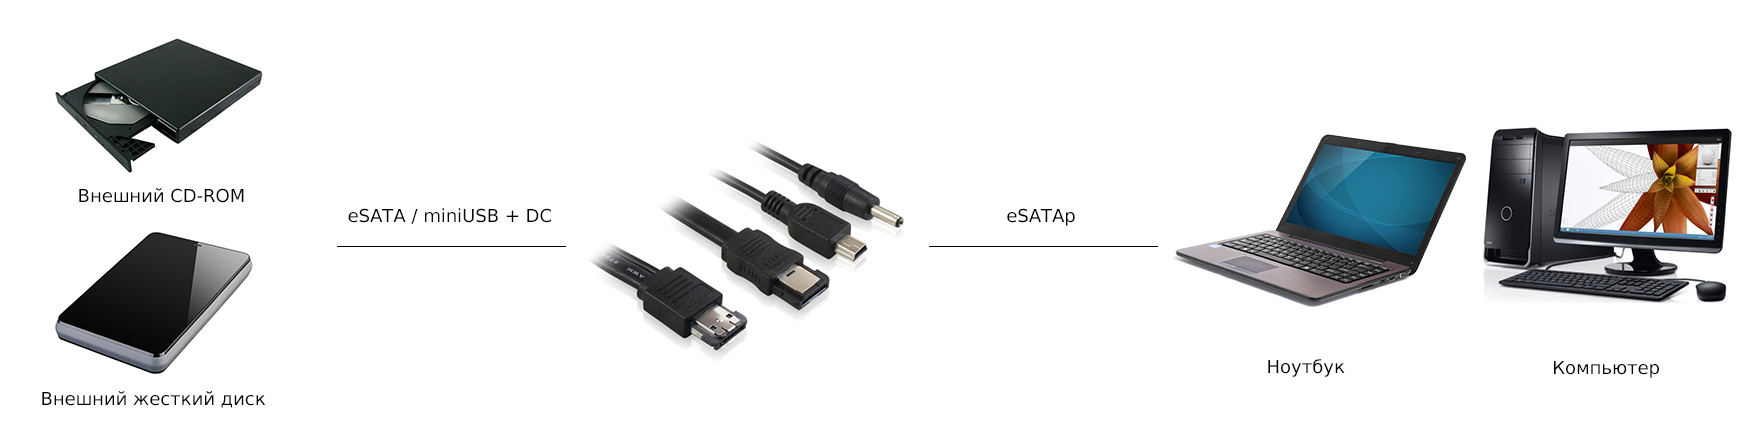 Переходник eSATA / miniUSB + DC на eSATAp Greenconnect GC-ST506